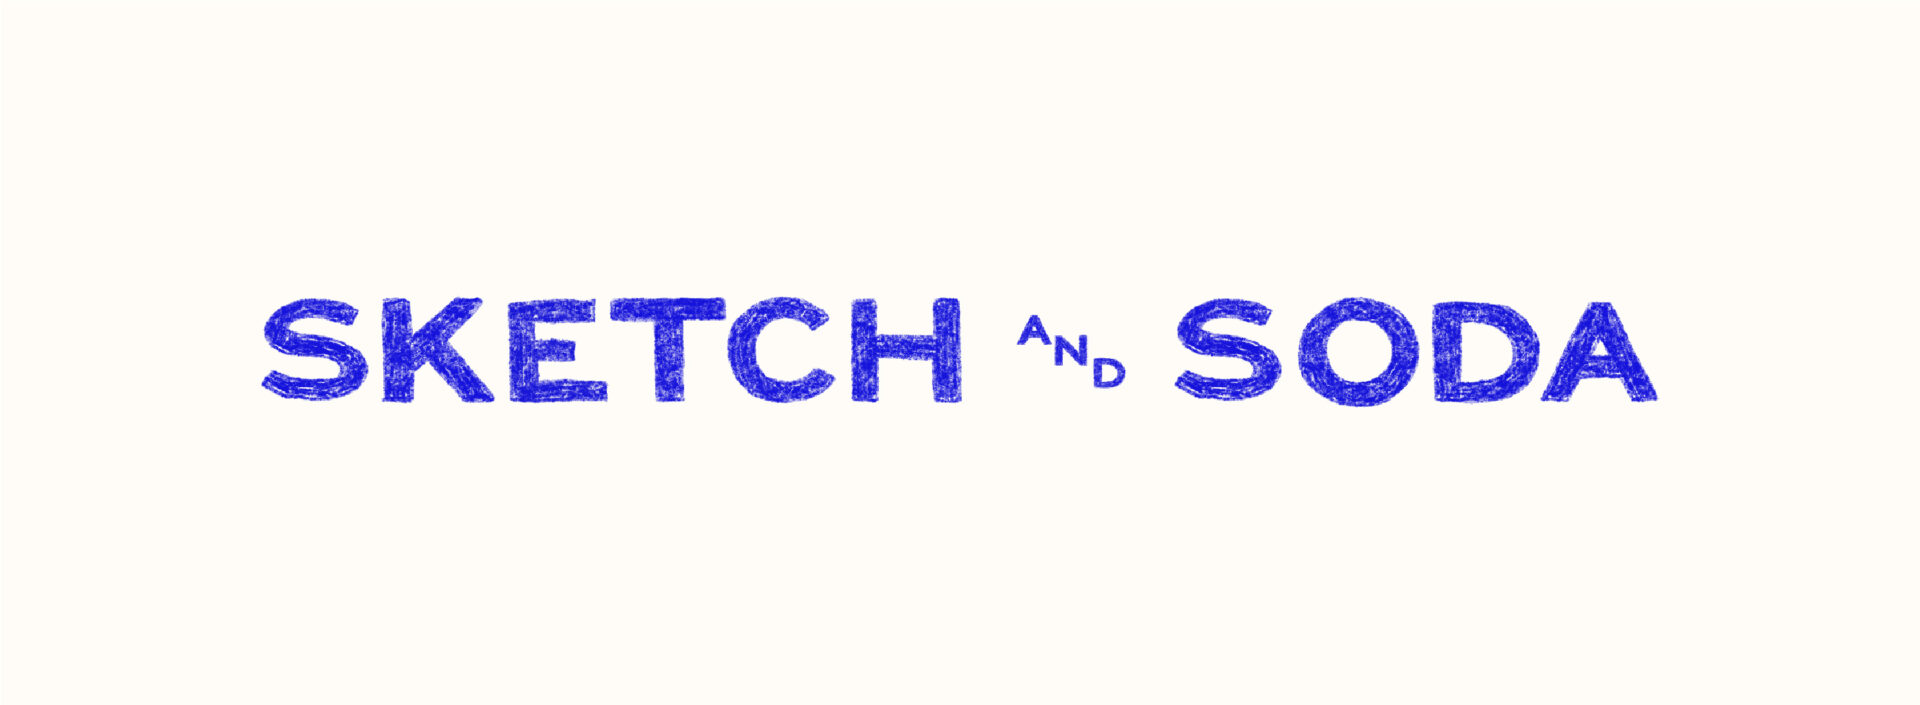 SketchandSoda_logo